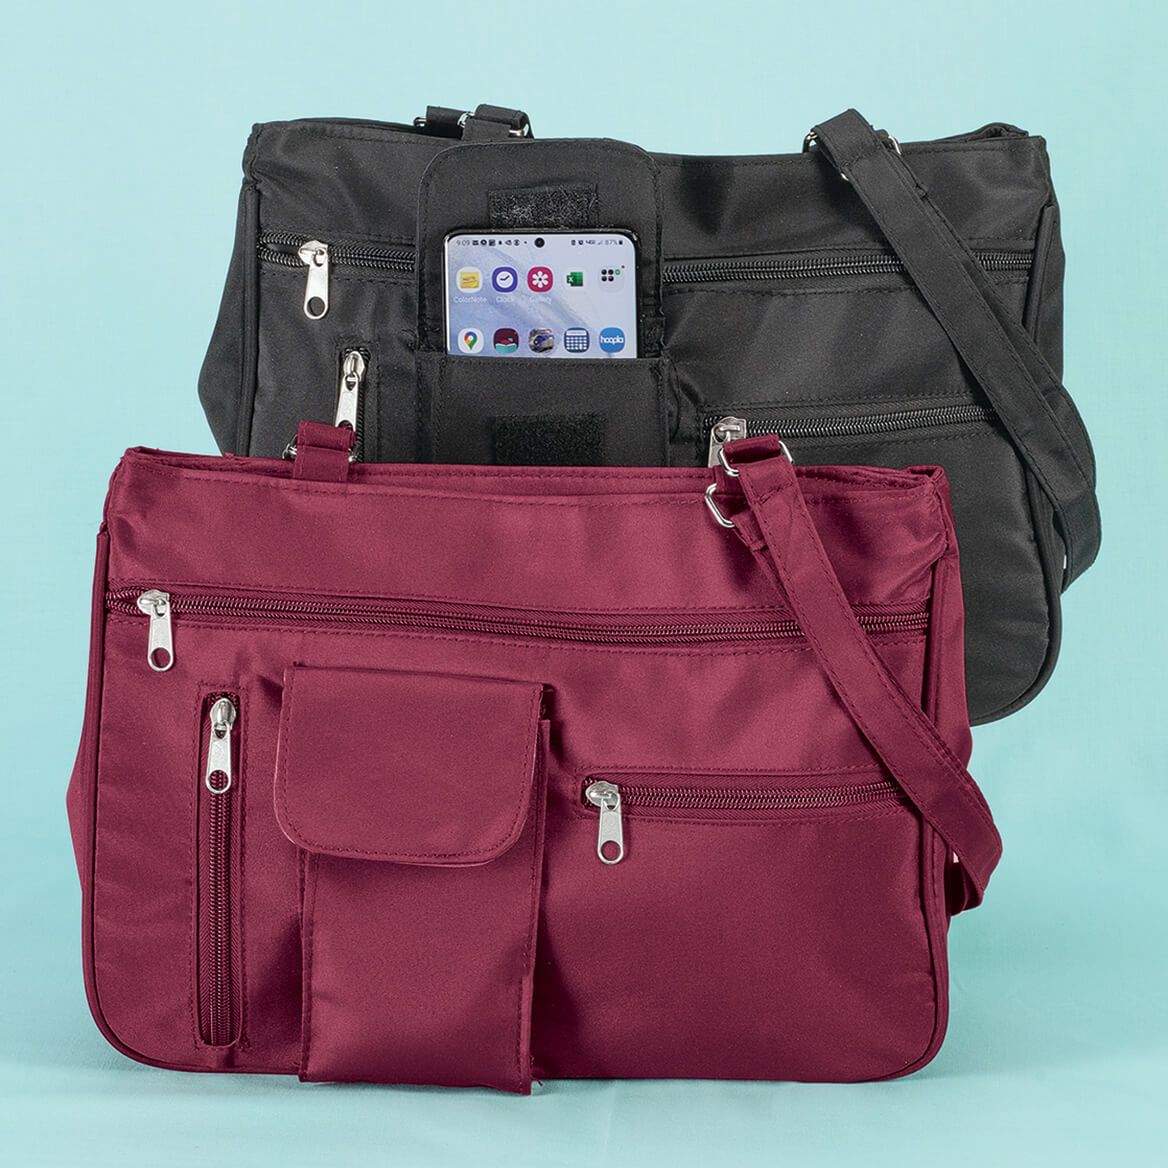 Multi-Pocket Handbag with Cell Phone Pocket + '-' + 375618